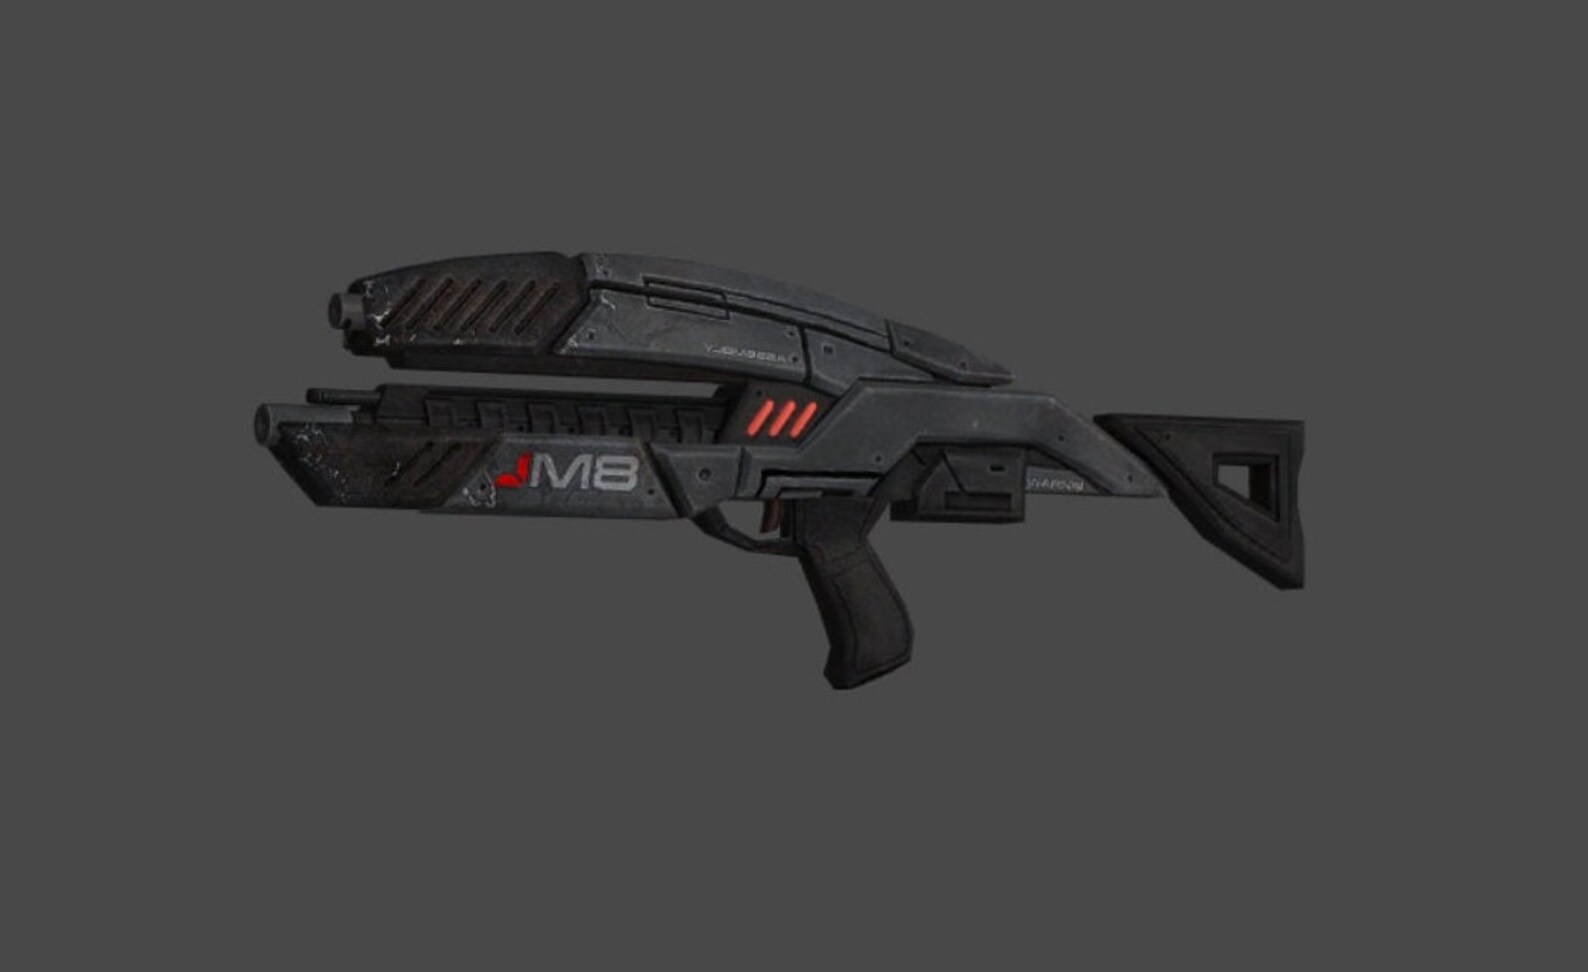 M8 Avenger Mass Effect Cosplay Assault Rifle Replica - Etsy UK